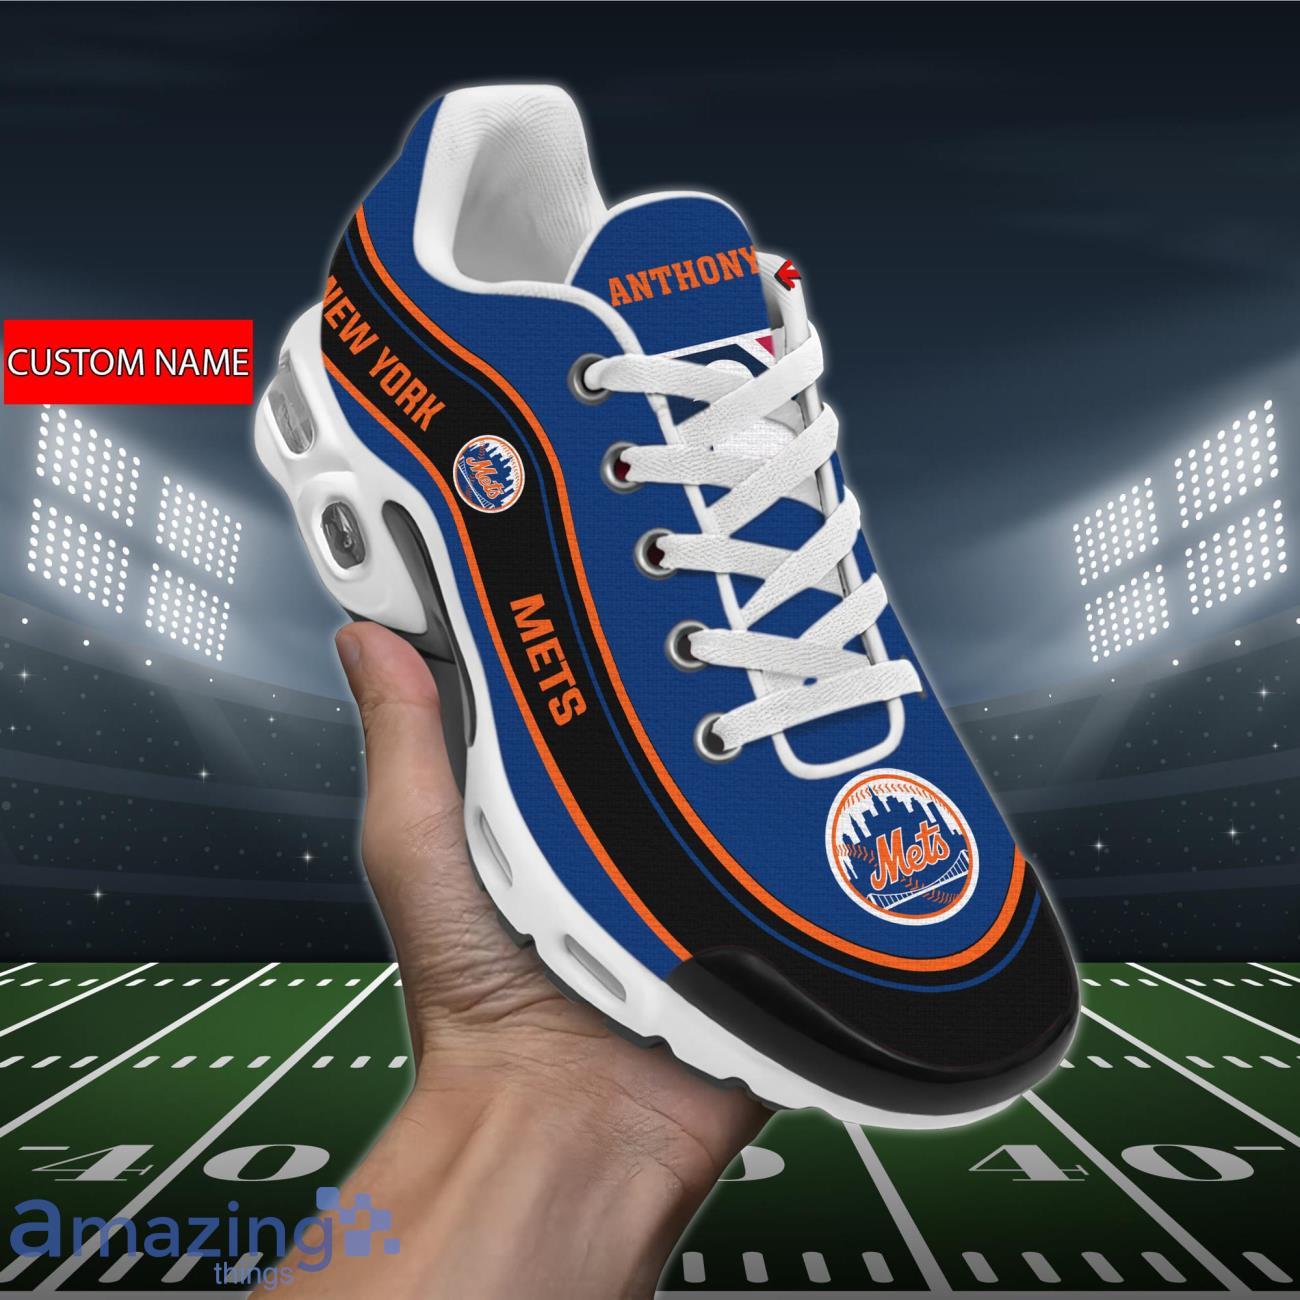 MLB New York Mets Air Jordan 13 Custom Name Shoes Sneaker